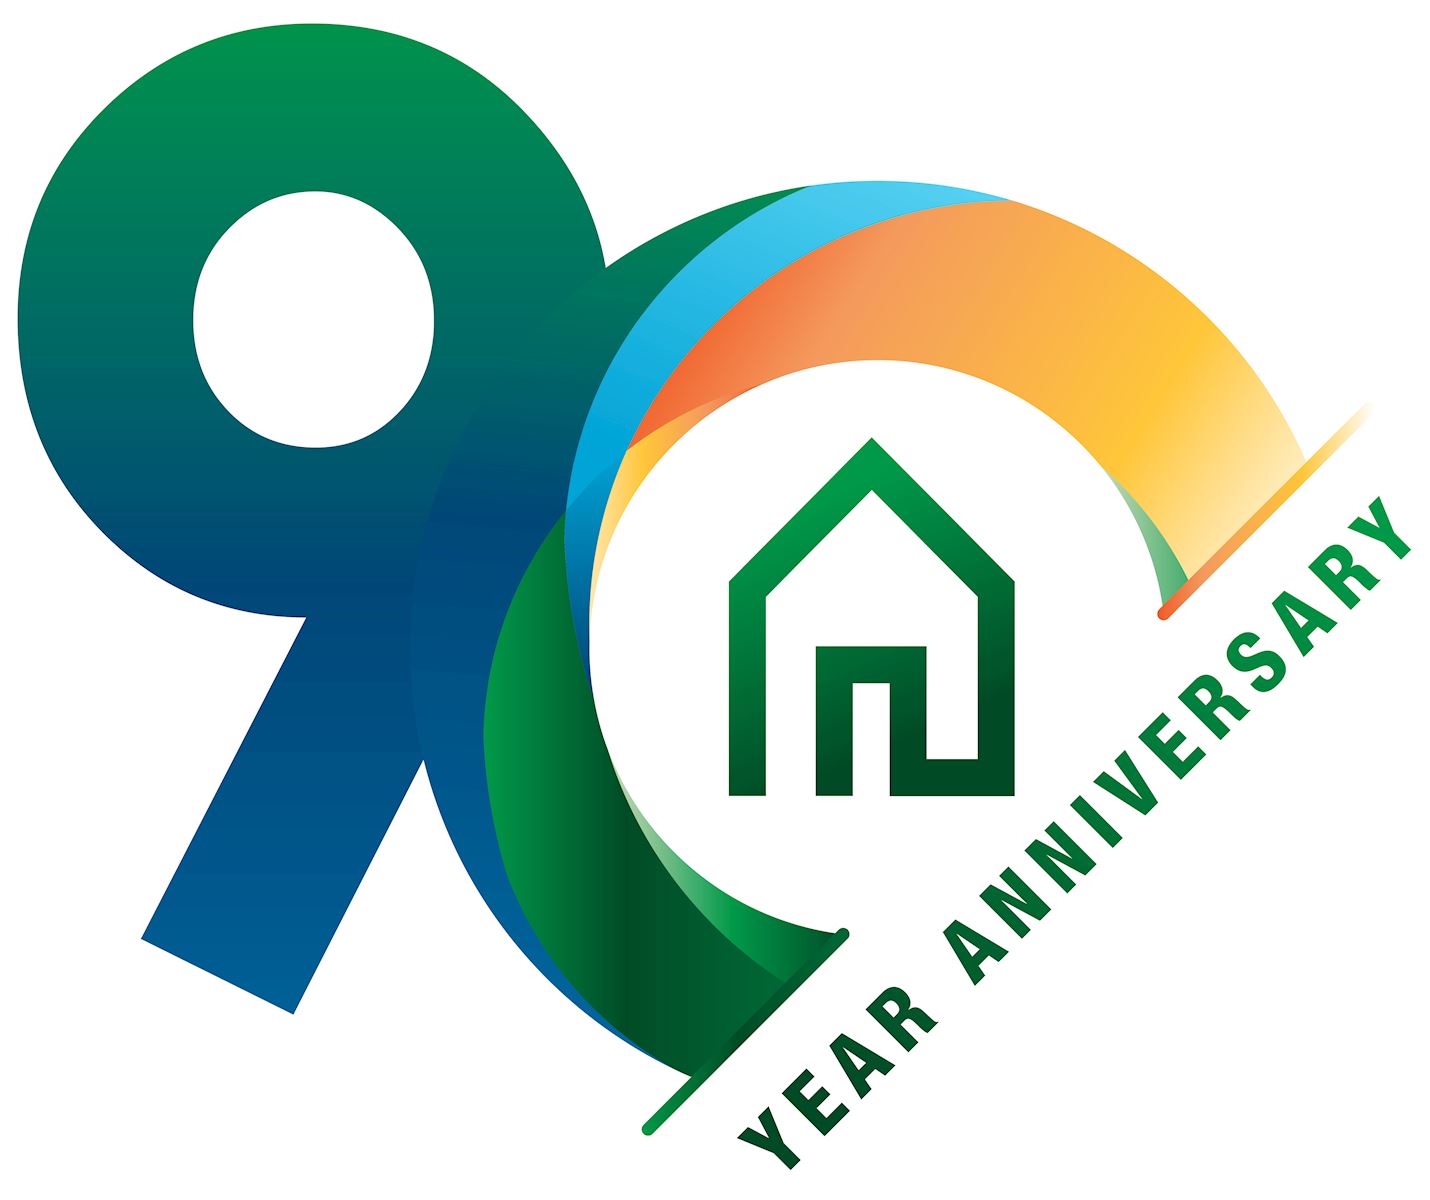 Sisseton Wahpeton Housing Authority Celebrates FHLB Des Moines 90th Anniversary